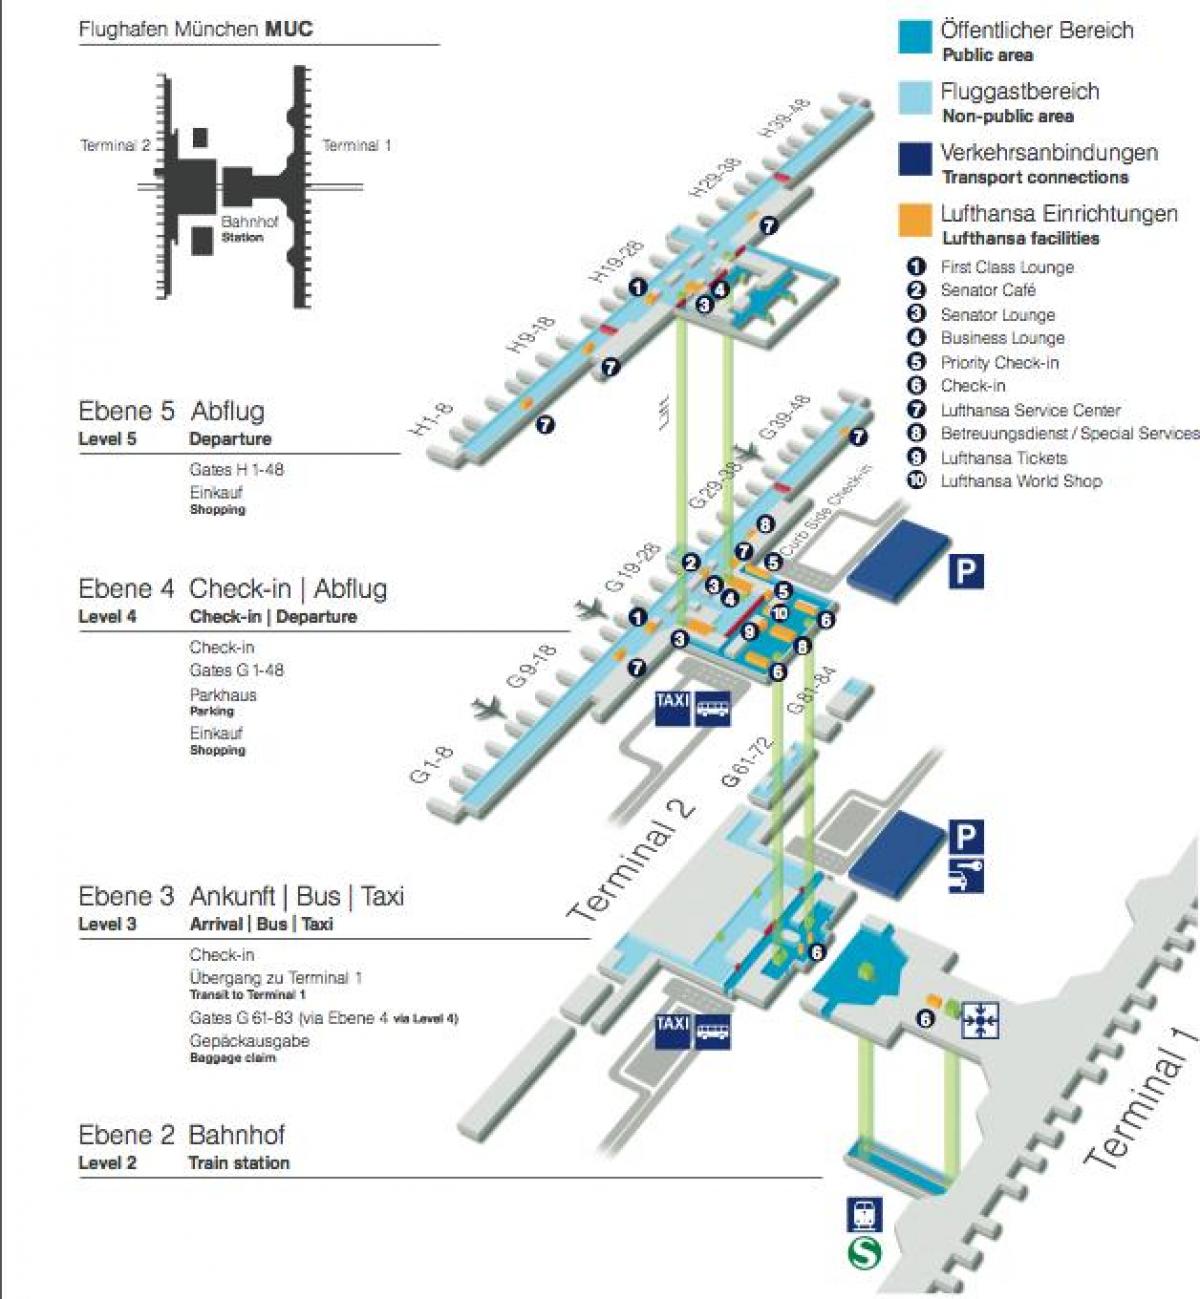 Karte von Flughafen München lufthansa